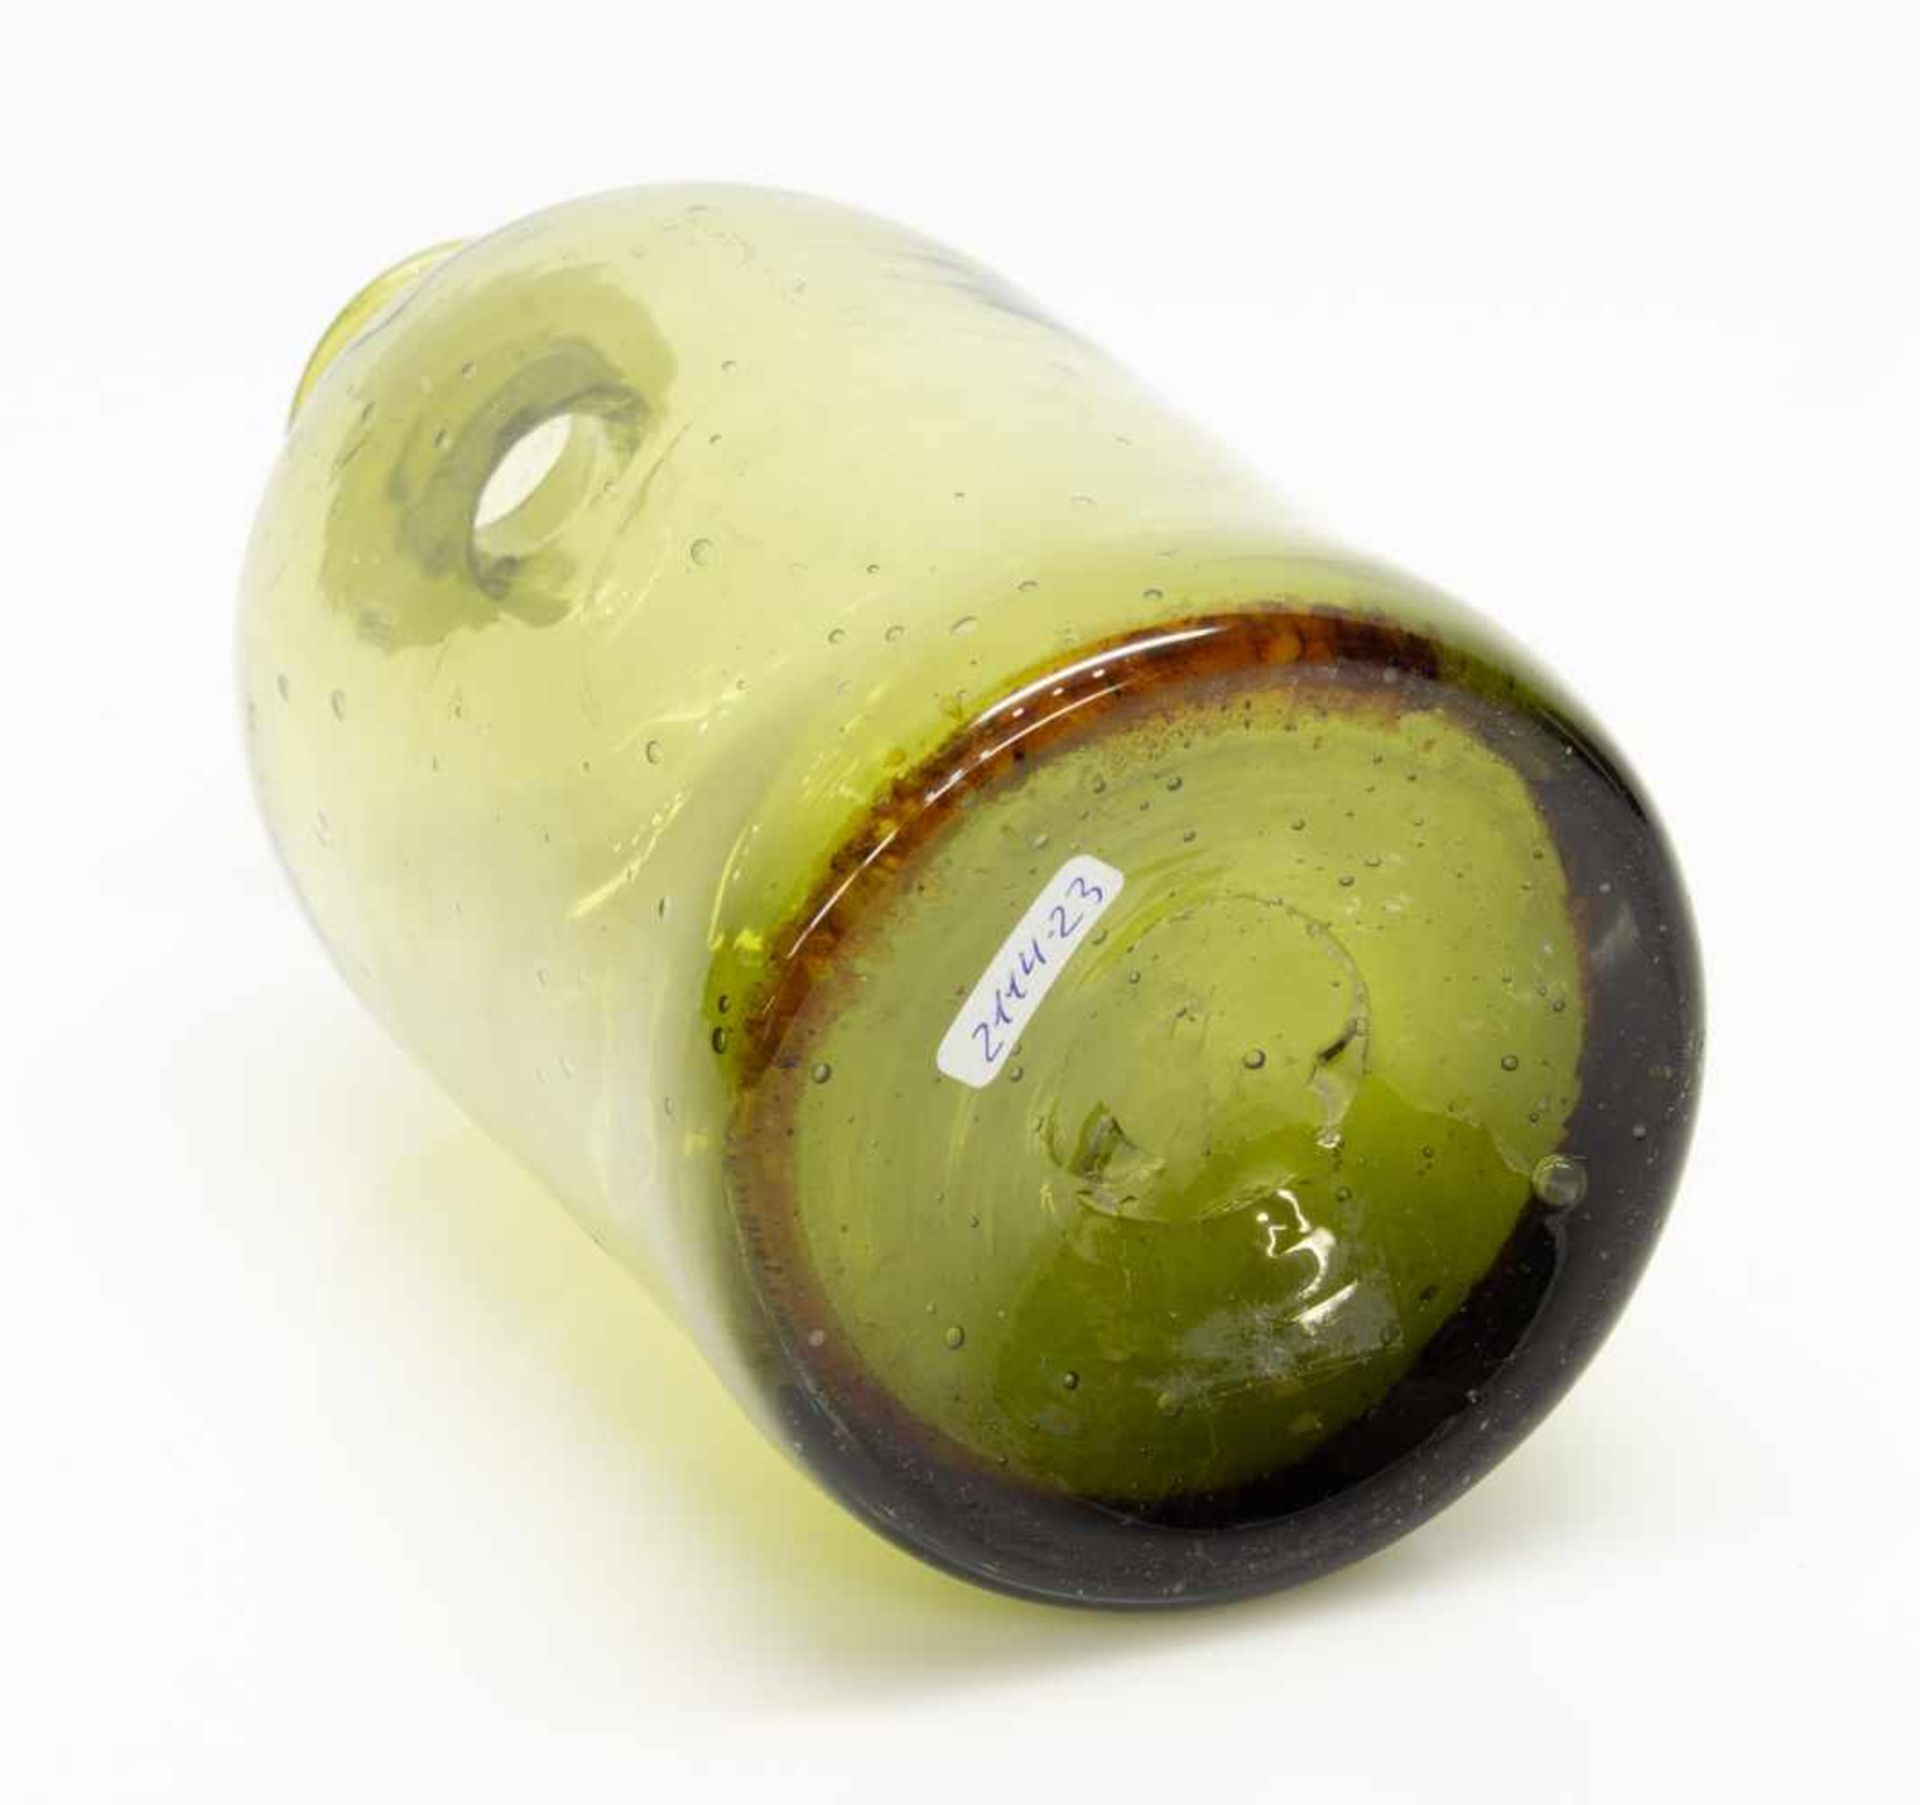 ApothekerflascheMecklenburger Waldglas Ende 19. Jh., grün gefärbtes Glas, eingezogene Schulter, - Bild 2 aus 2